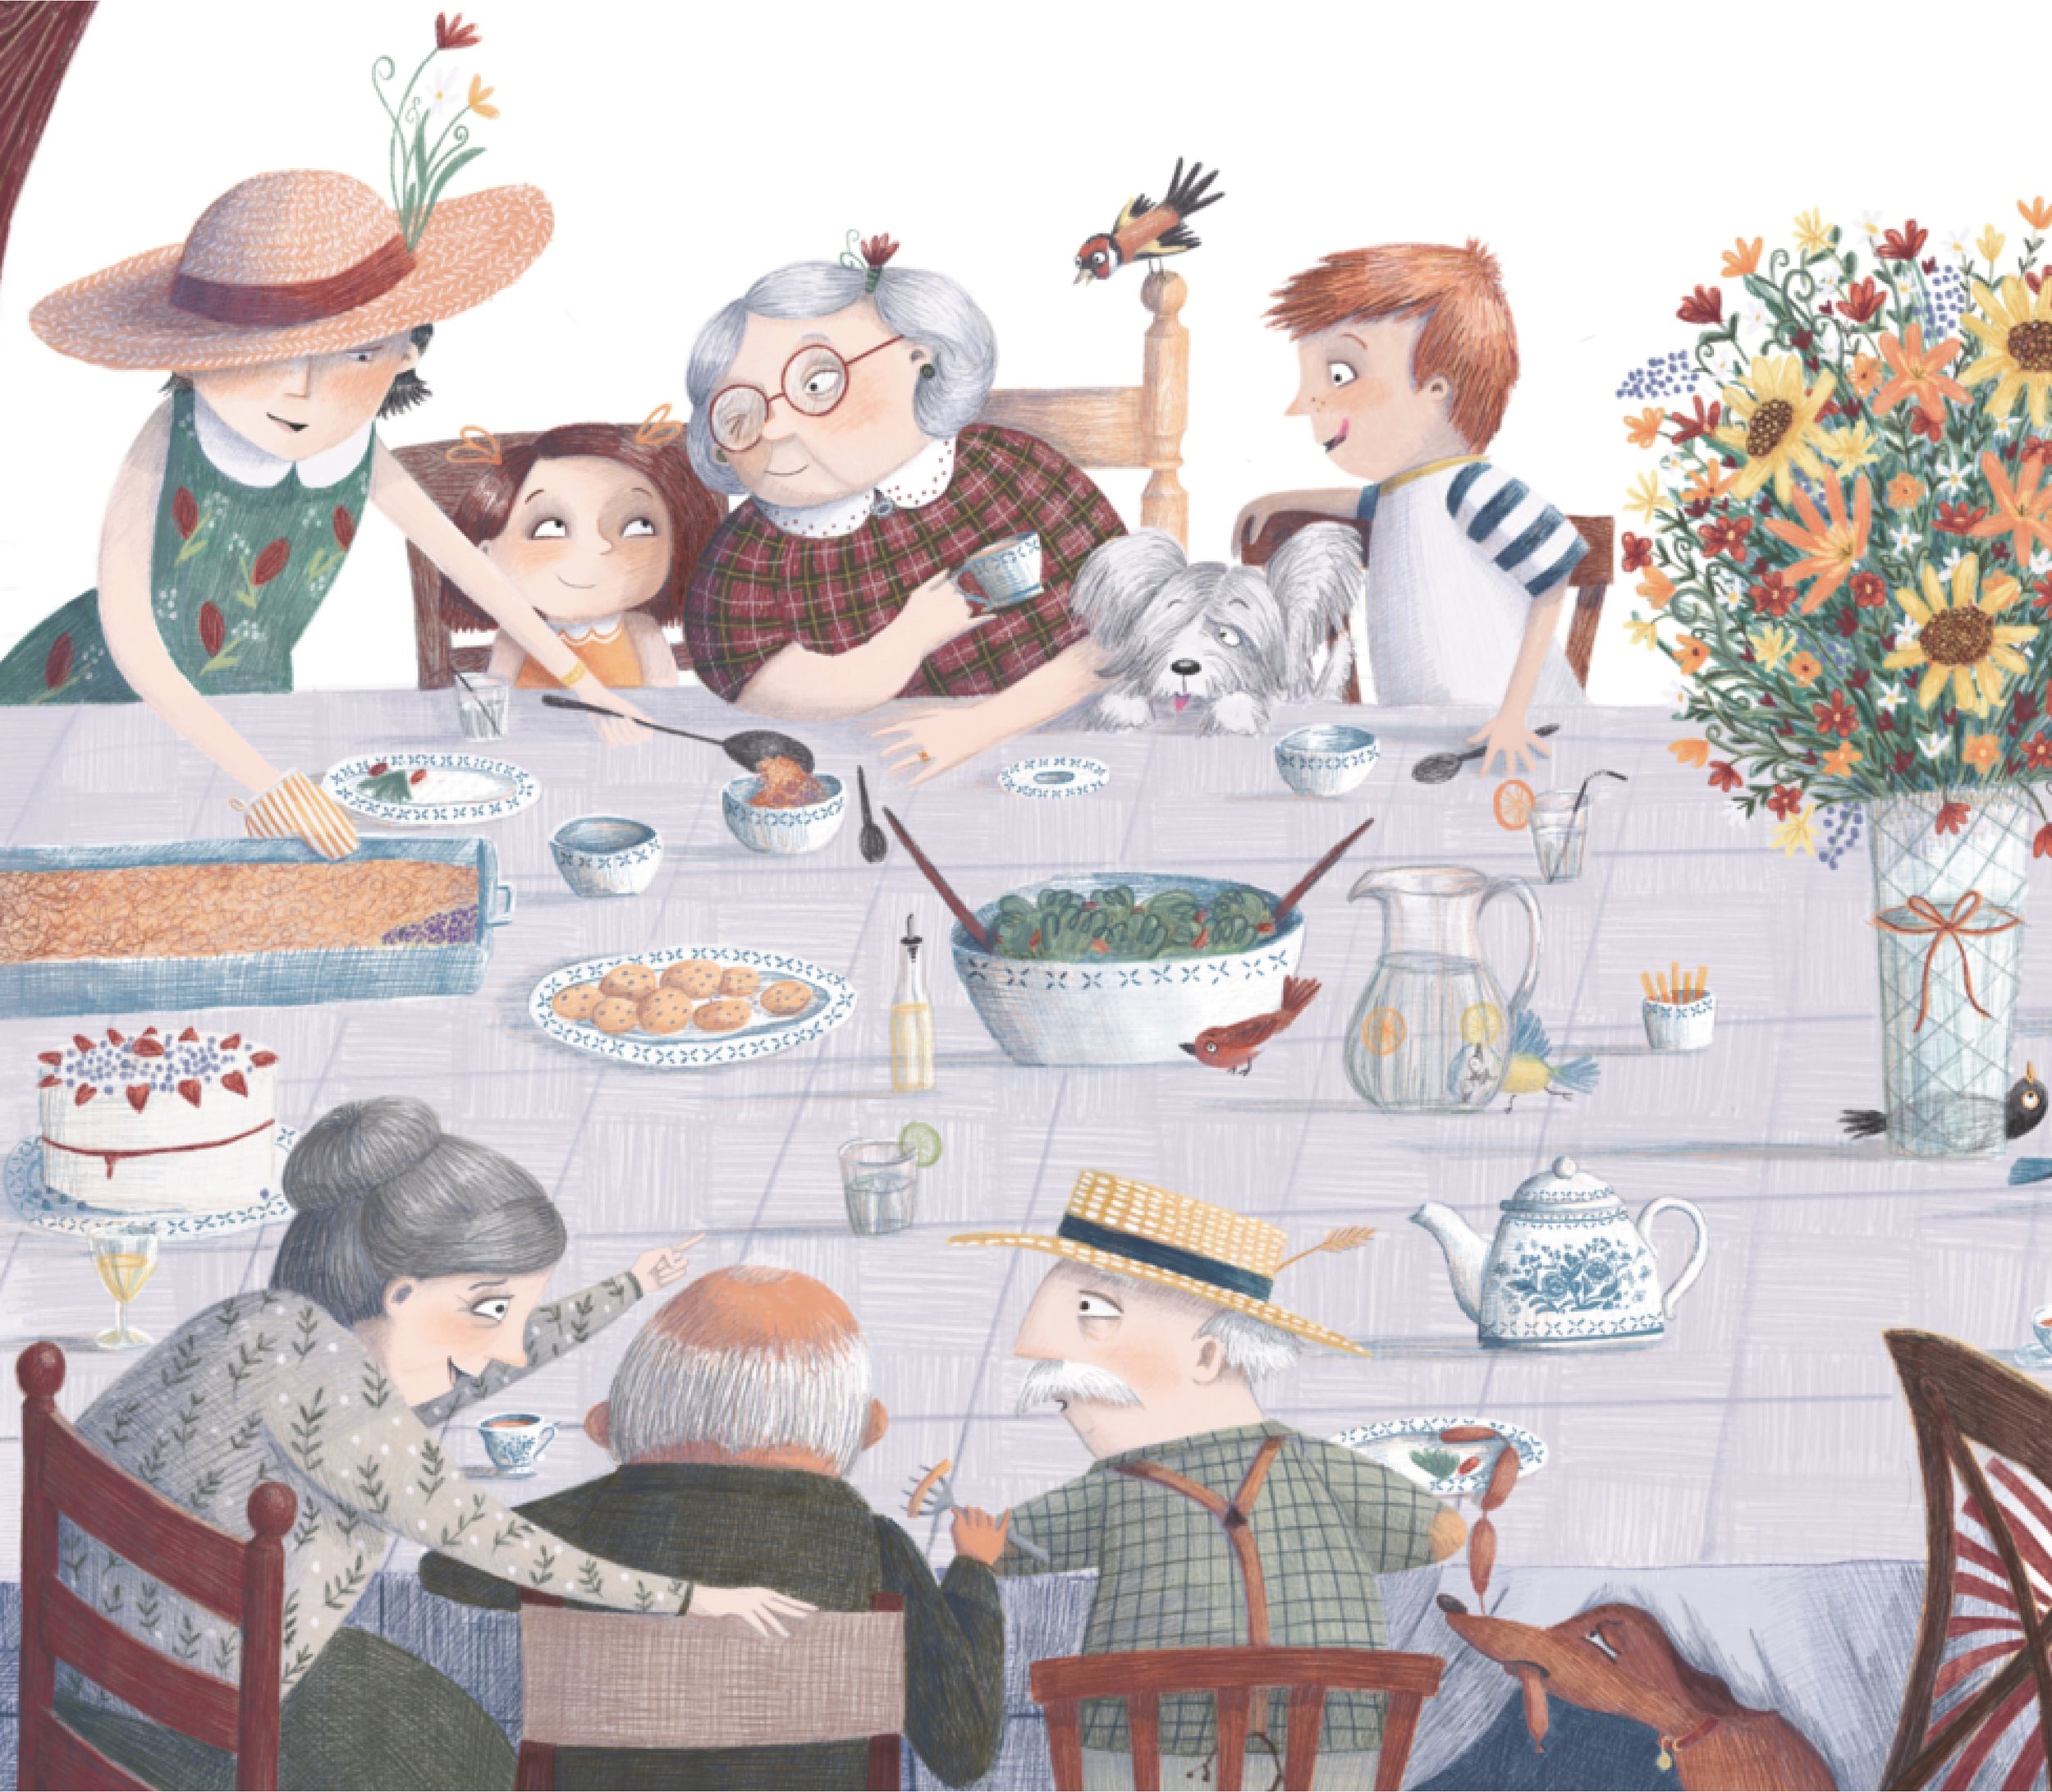 helen-shoesmith-family-eating-illustration.jpg